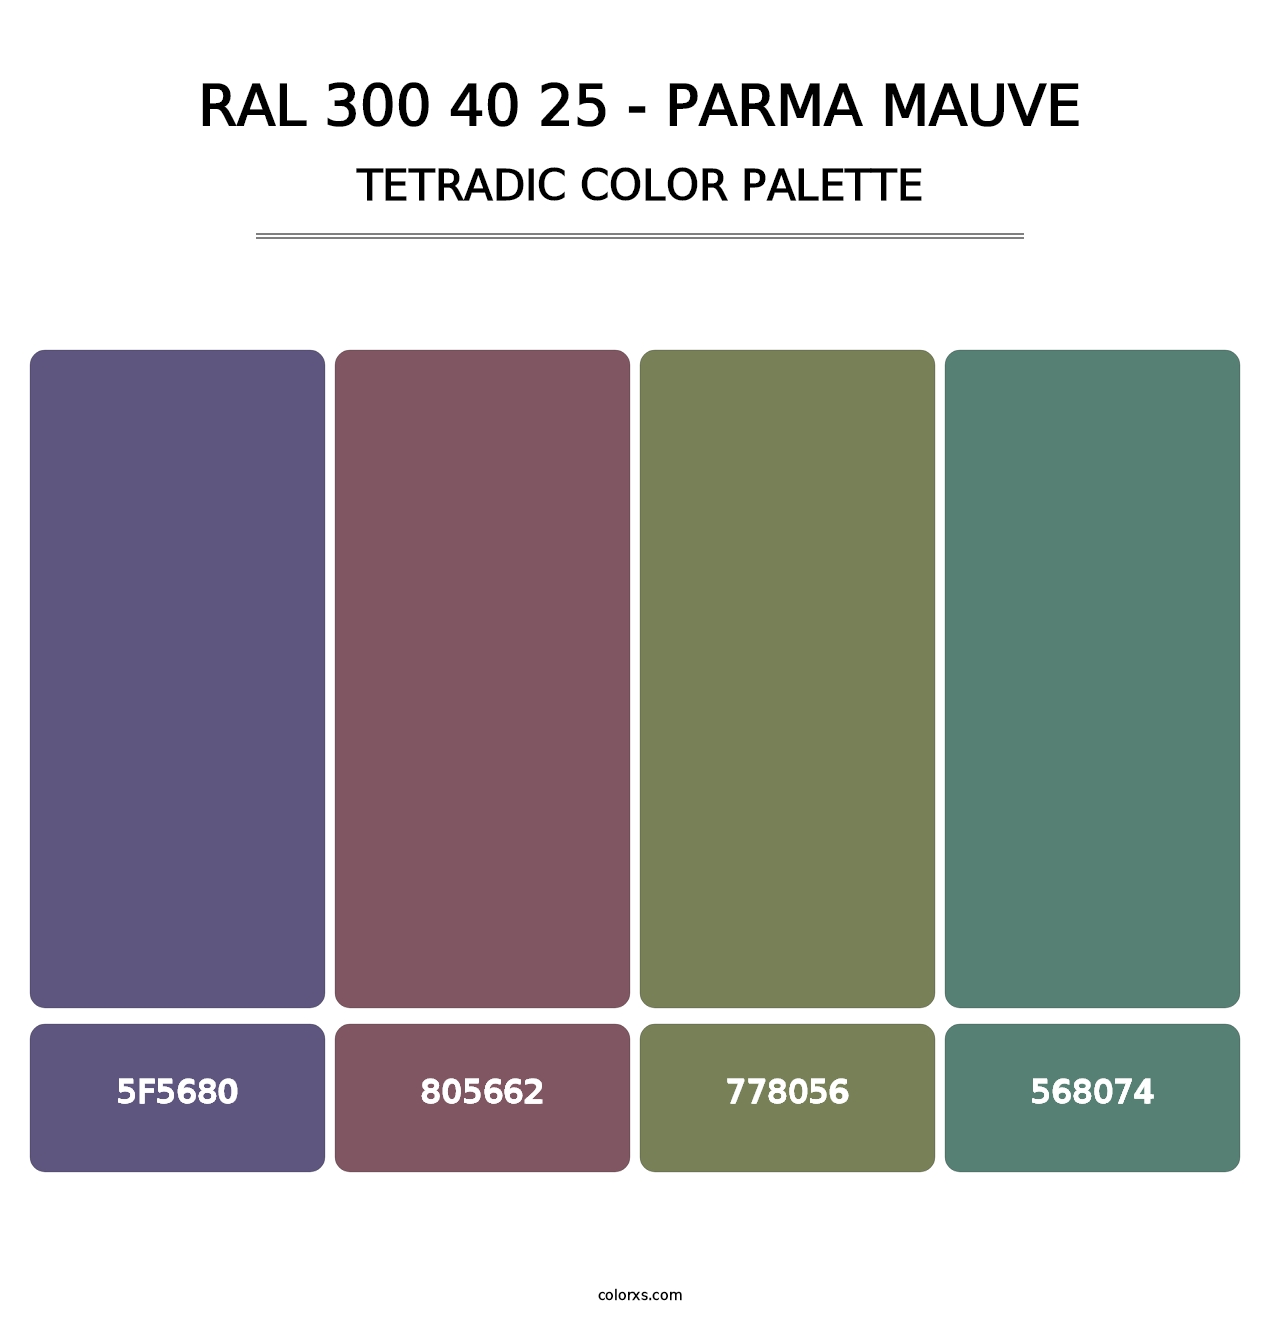 RAL 300 40 25 - Parma Mauve - Tetradic Color Palette